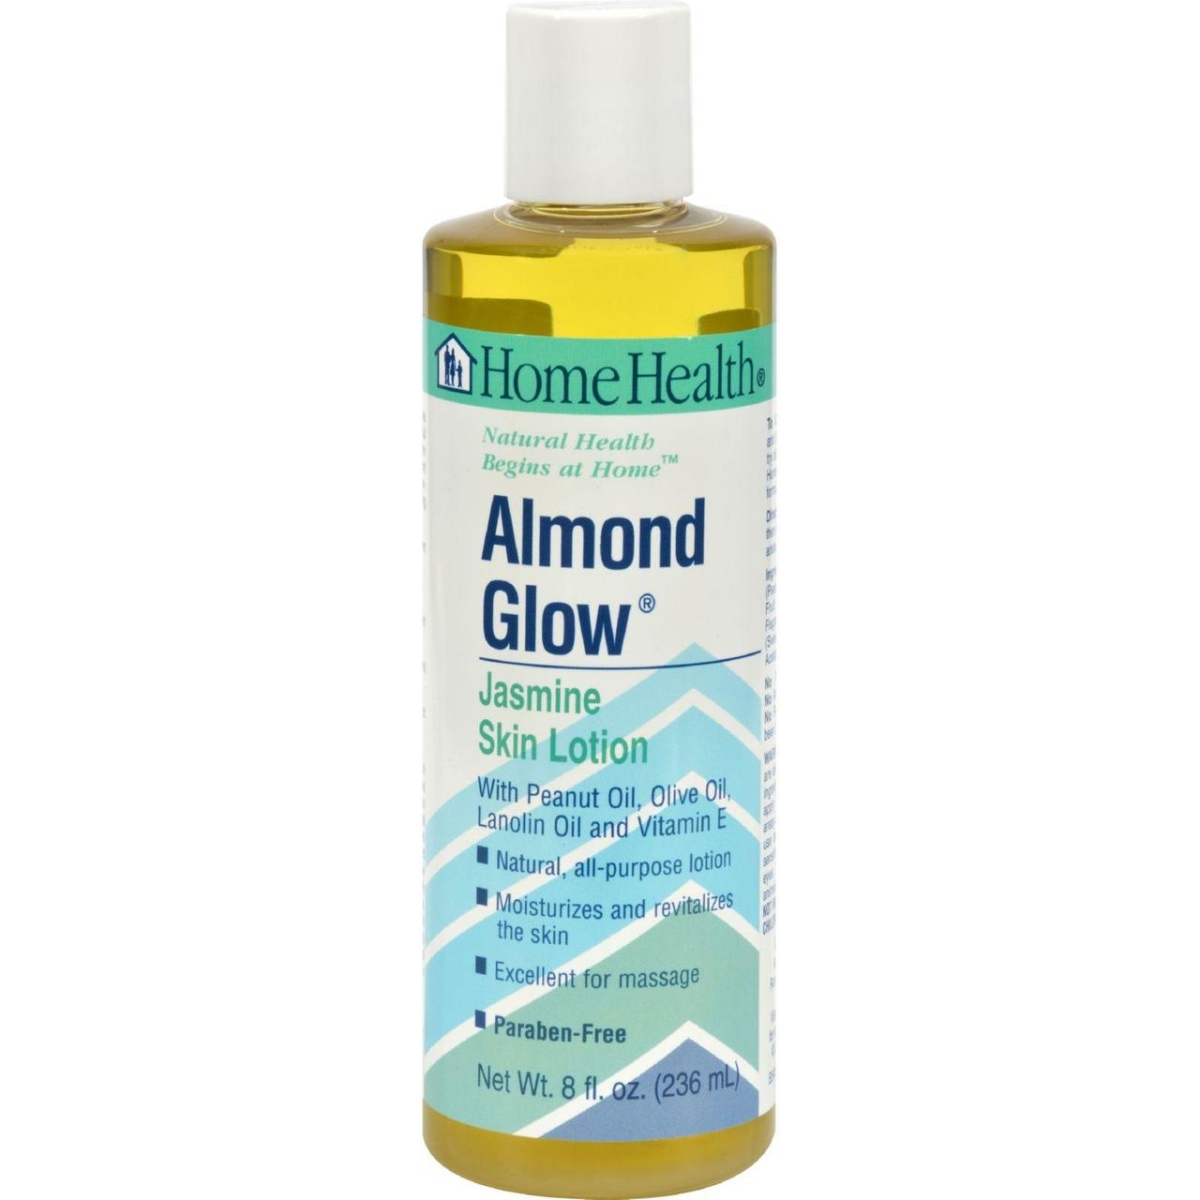 Hg0118380 8 Fl Oz Almond Glow Skin Lotion - Jasmine